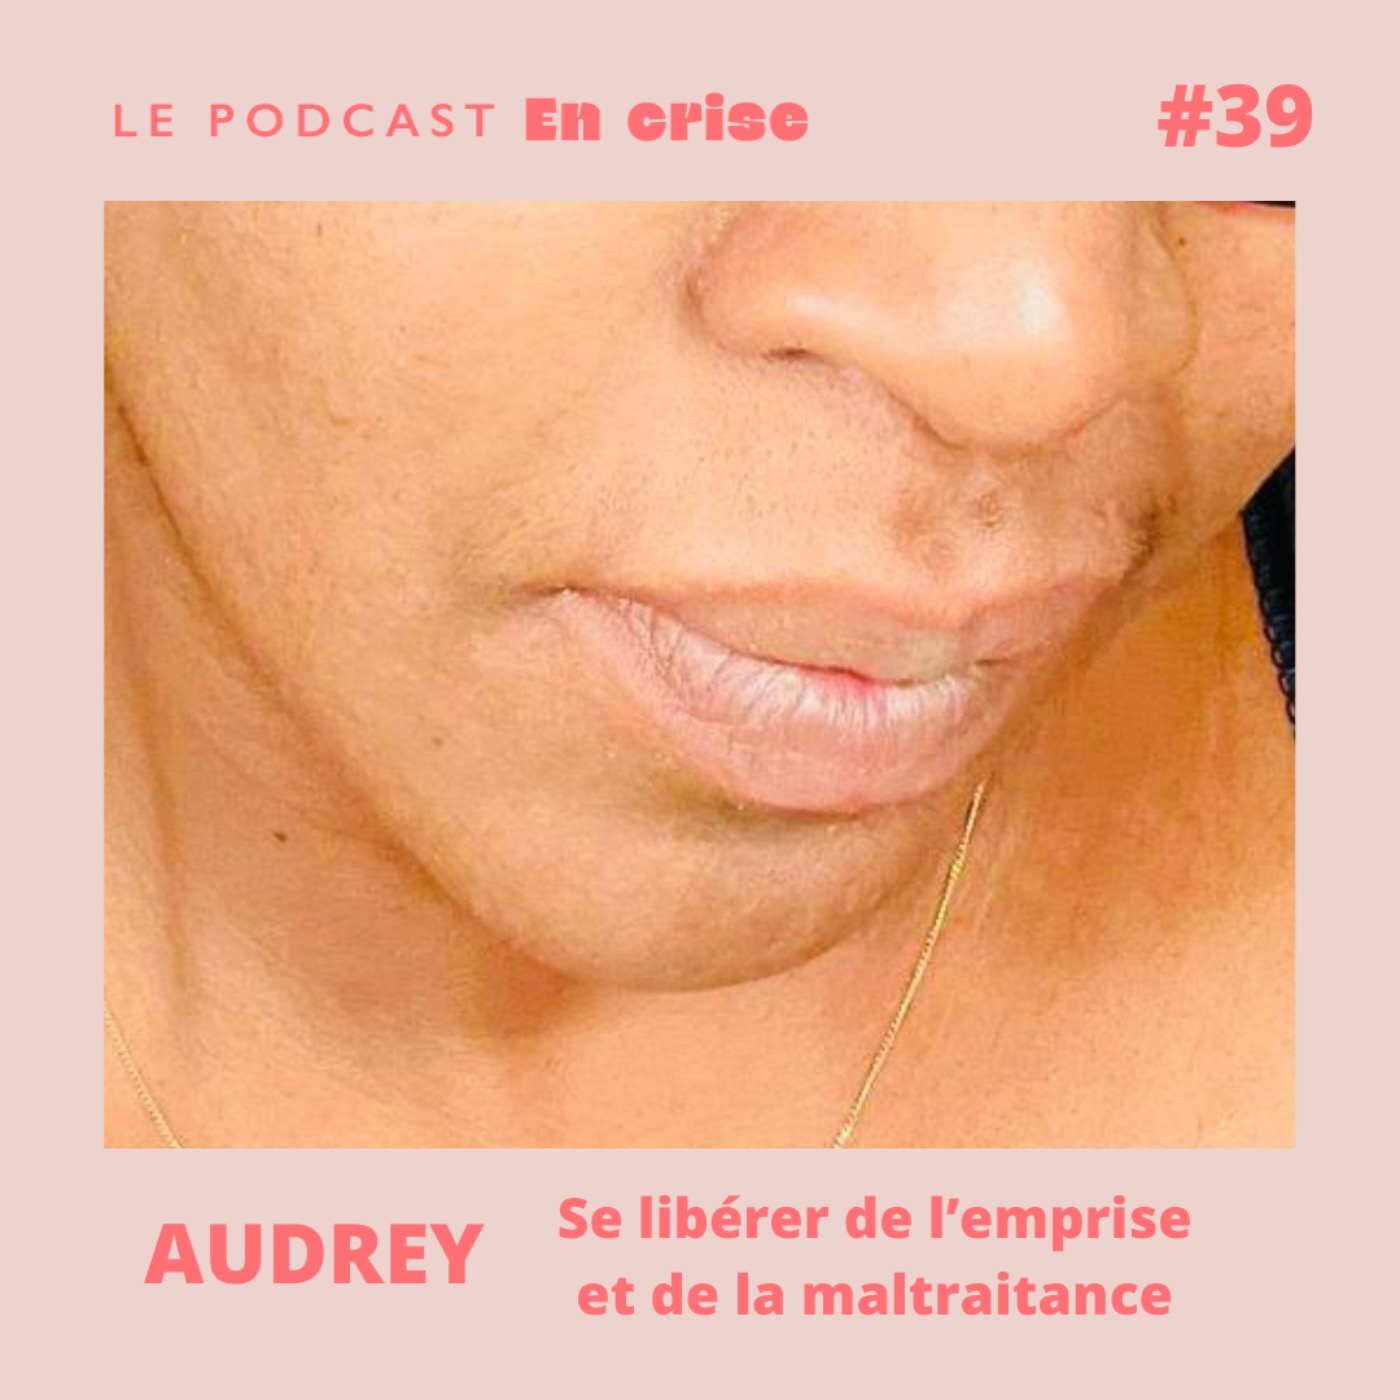 #39 - Audrey : "Se libérer de l’emprise et des violences conjugales"